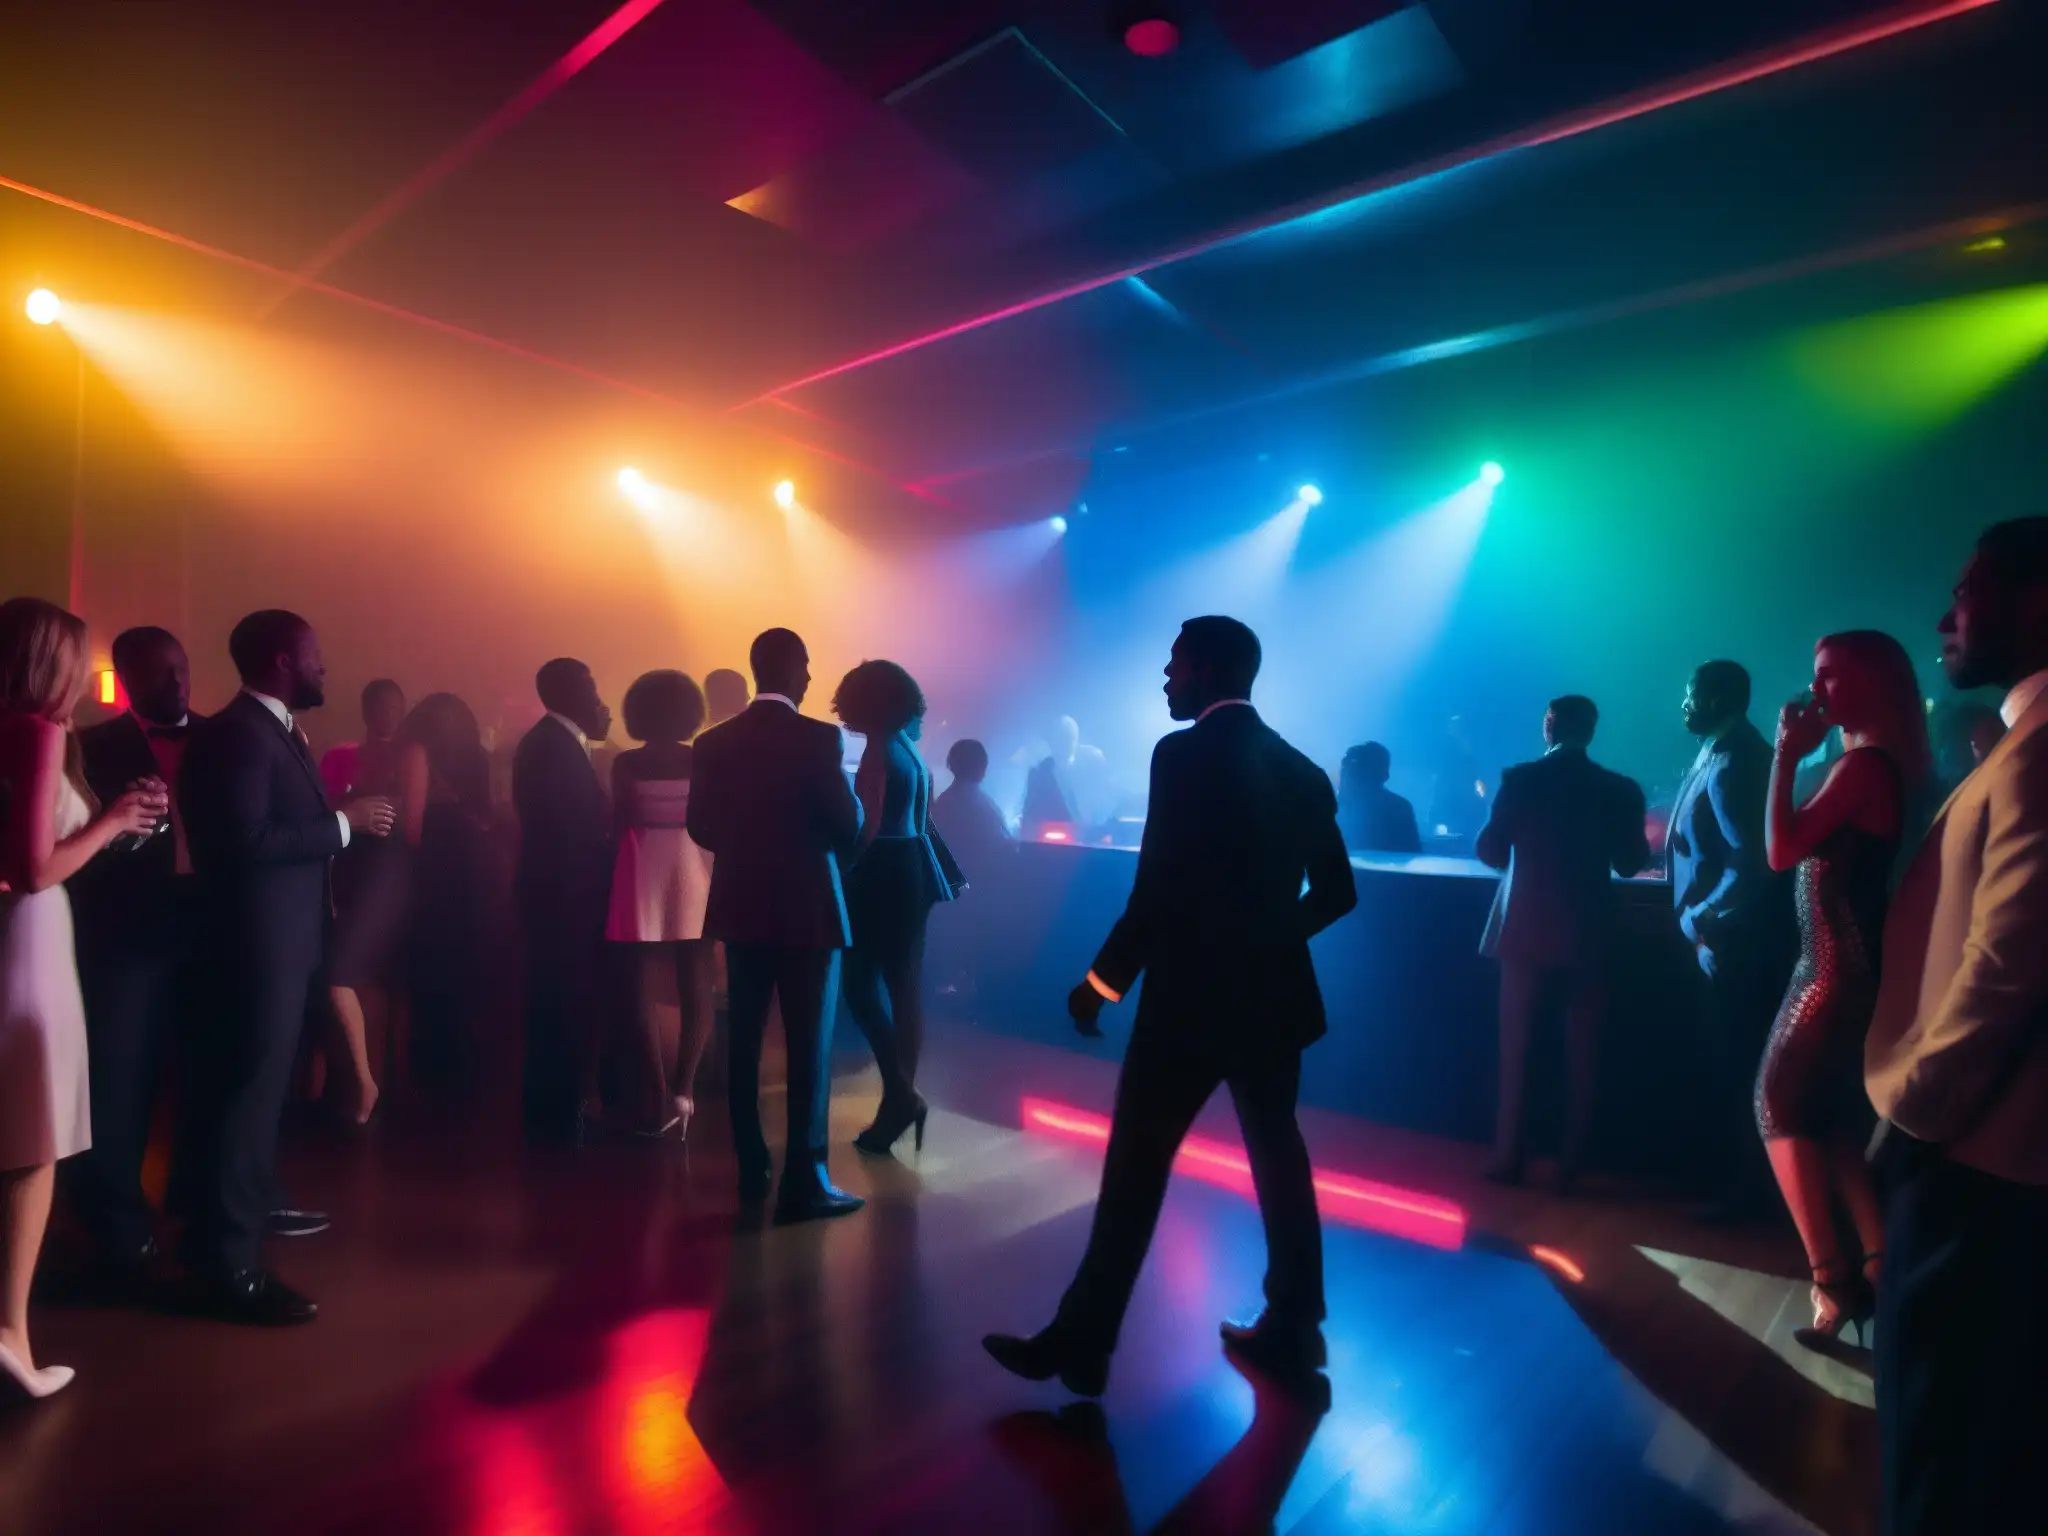 Pactos con el diablo vida nocturna: Club nocturno con luces neón, figuras bailando en la penumbra y una misteriosa negociación en la esquina